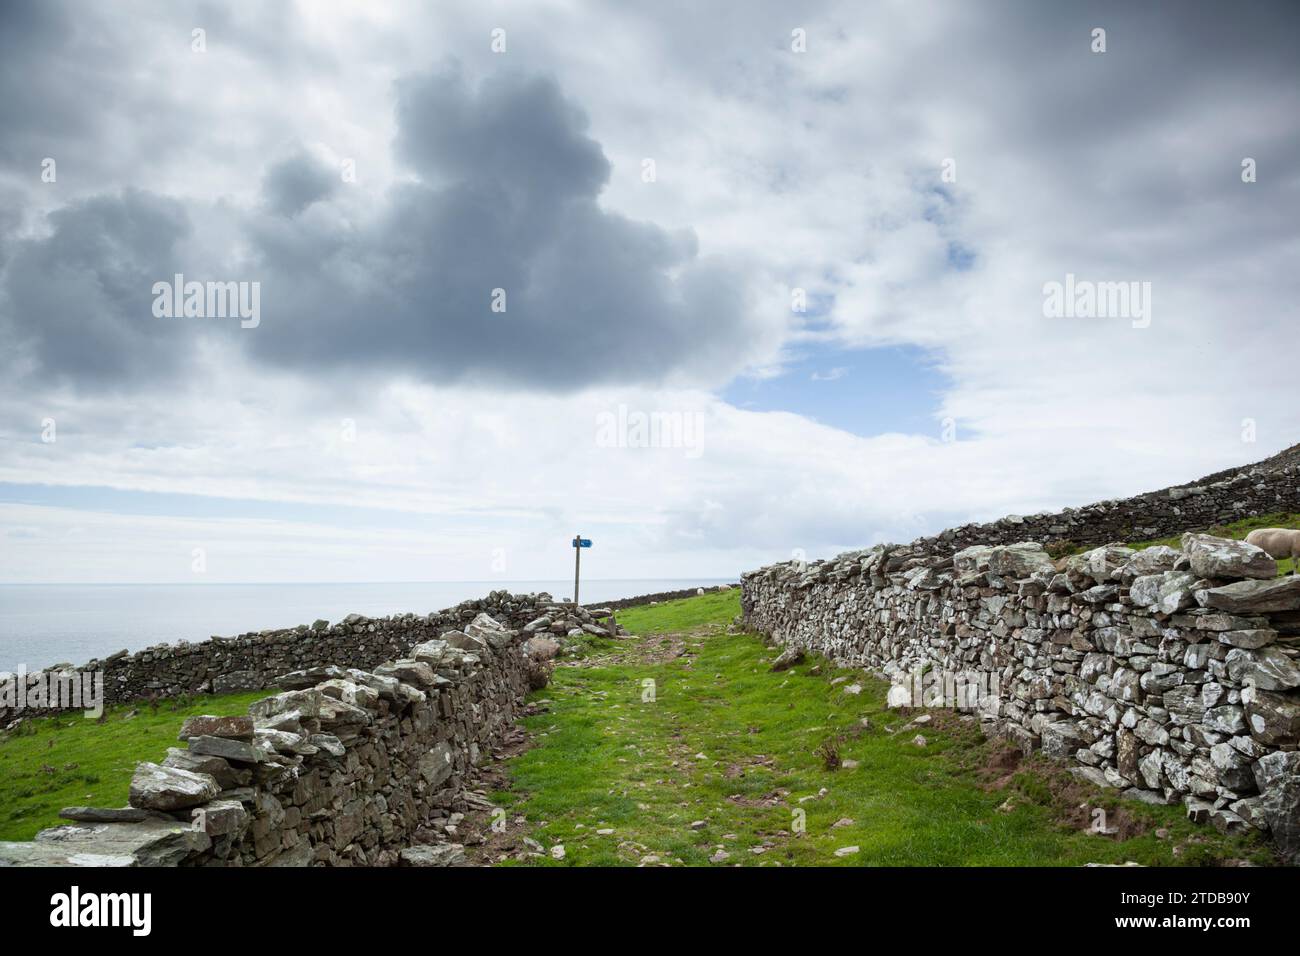 Sentiero pedonale e muretti a secco. Isola di Man, Regno Unito. Foto Stock